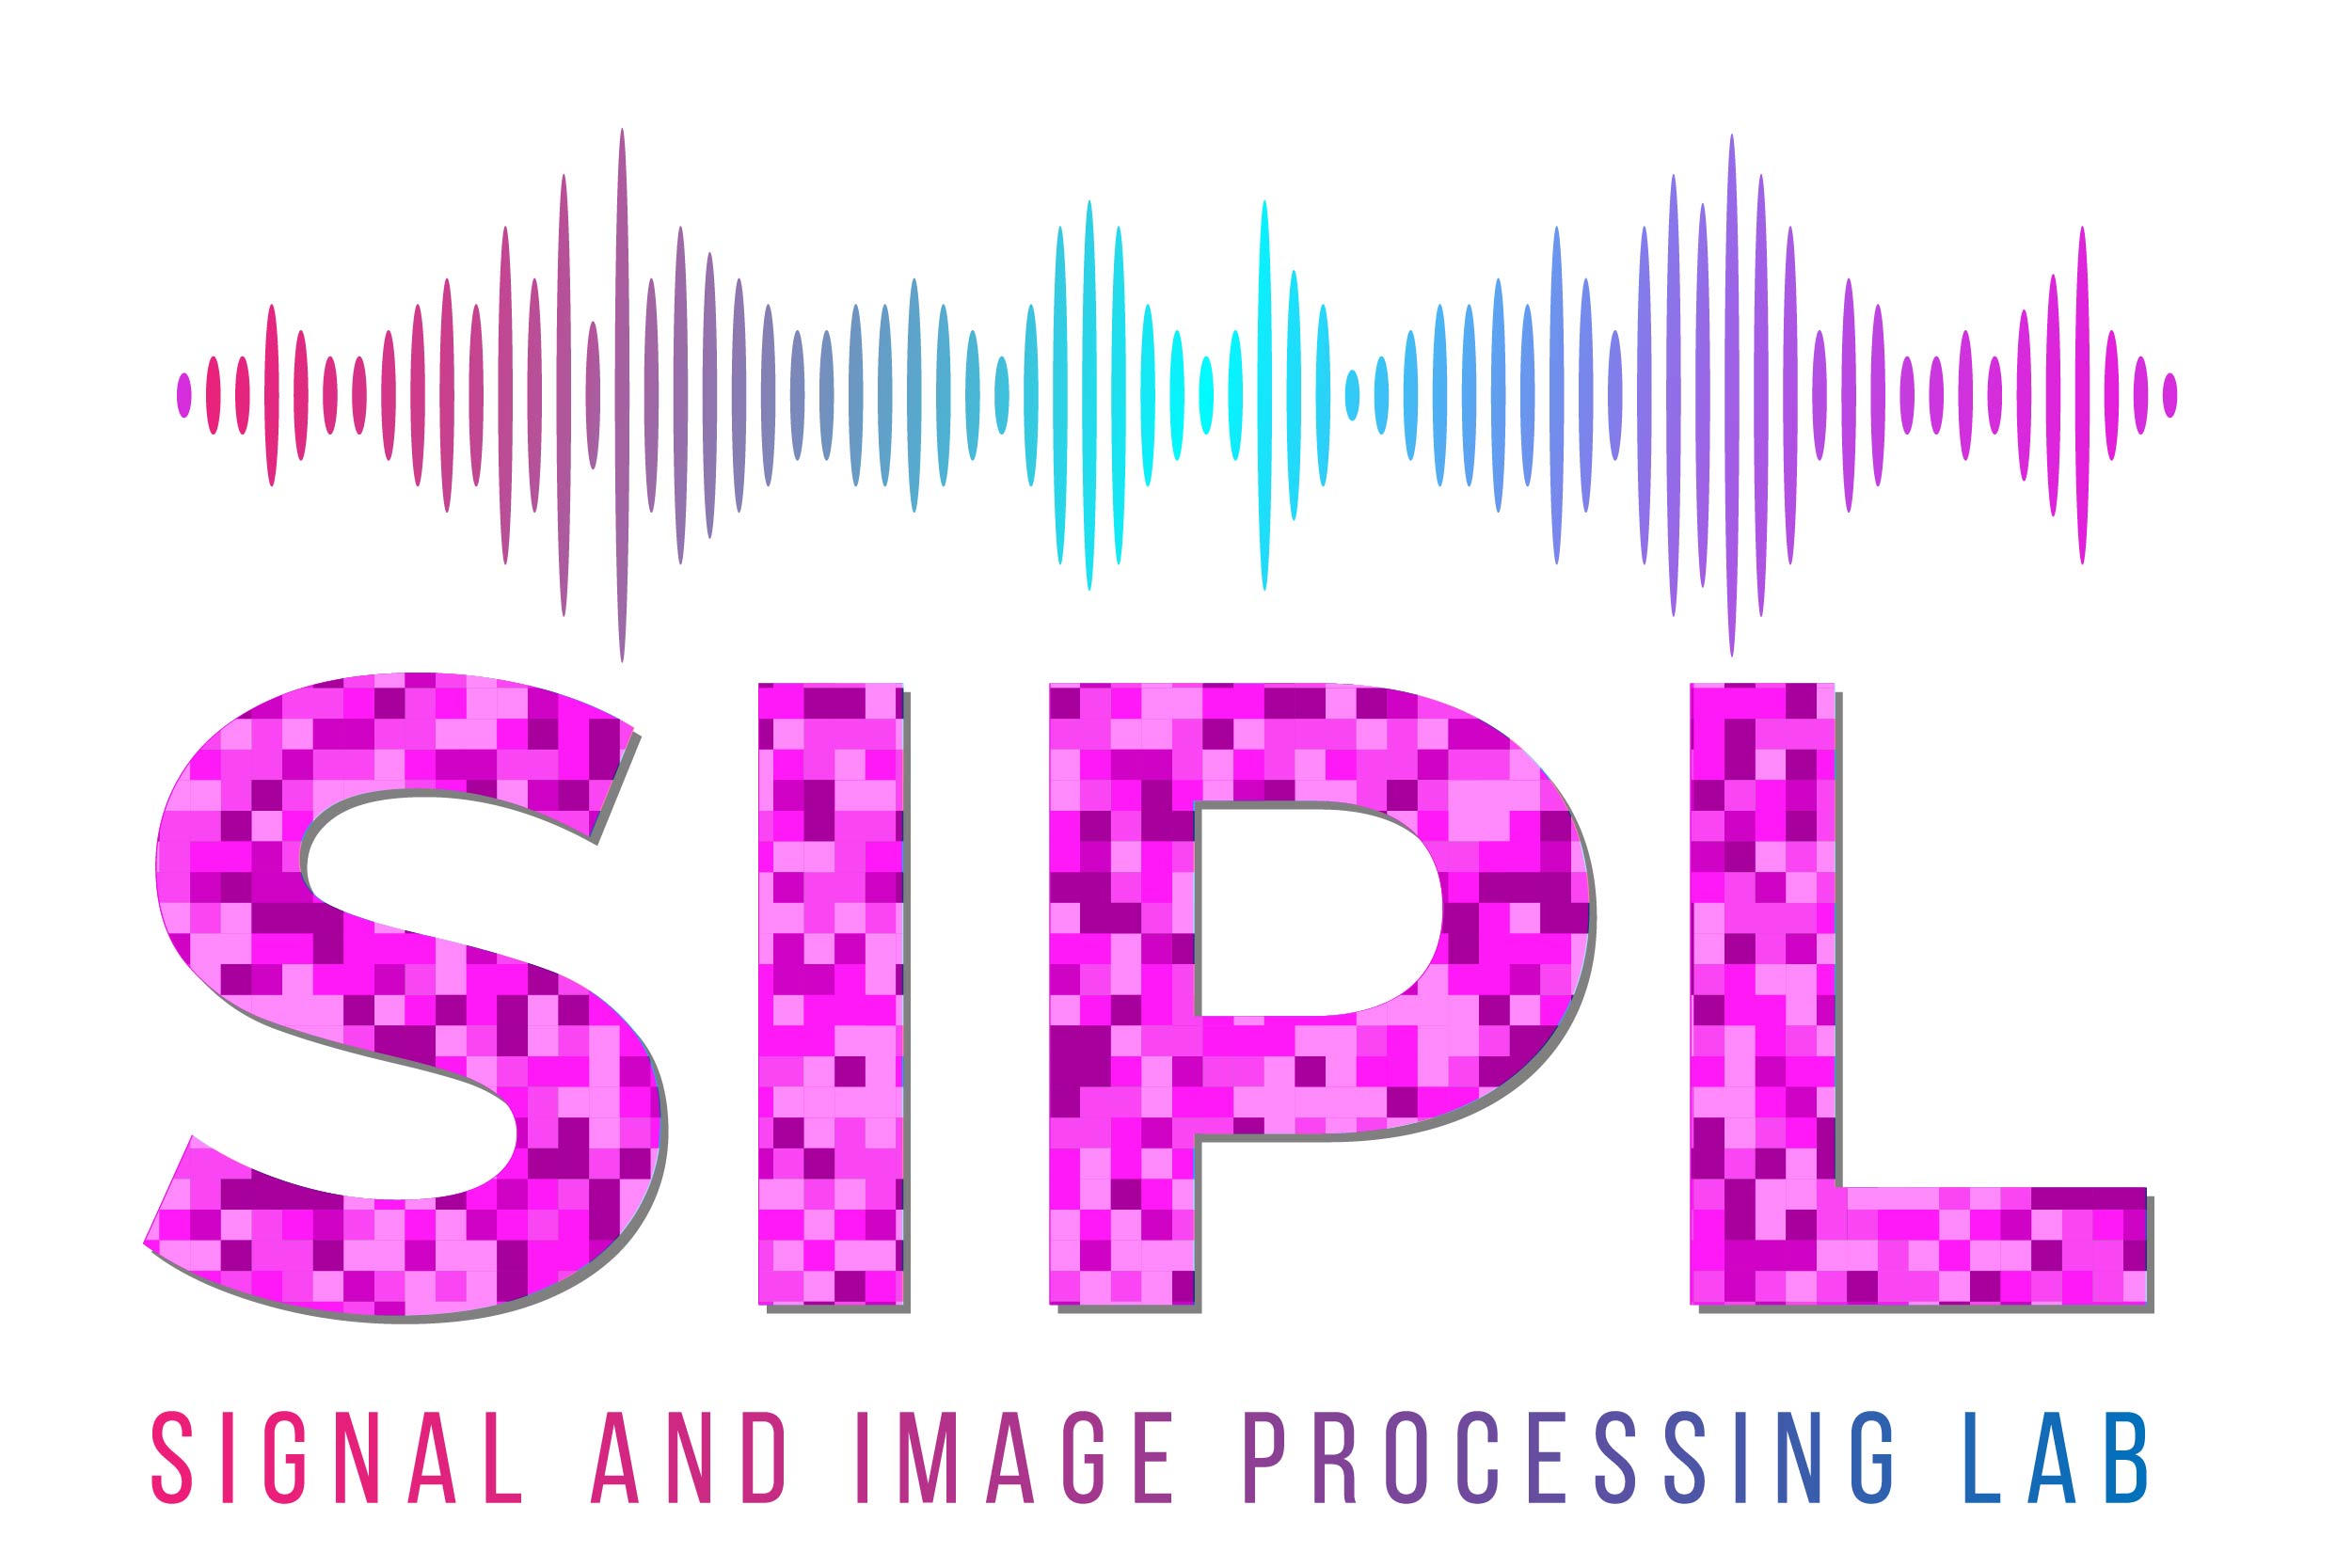 SIPL logo